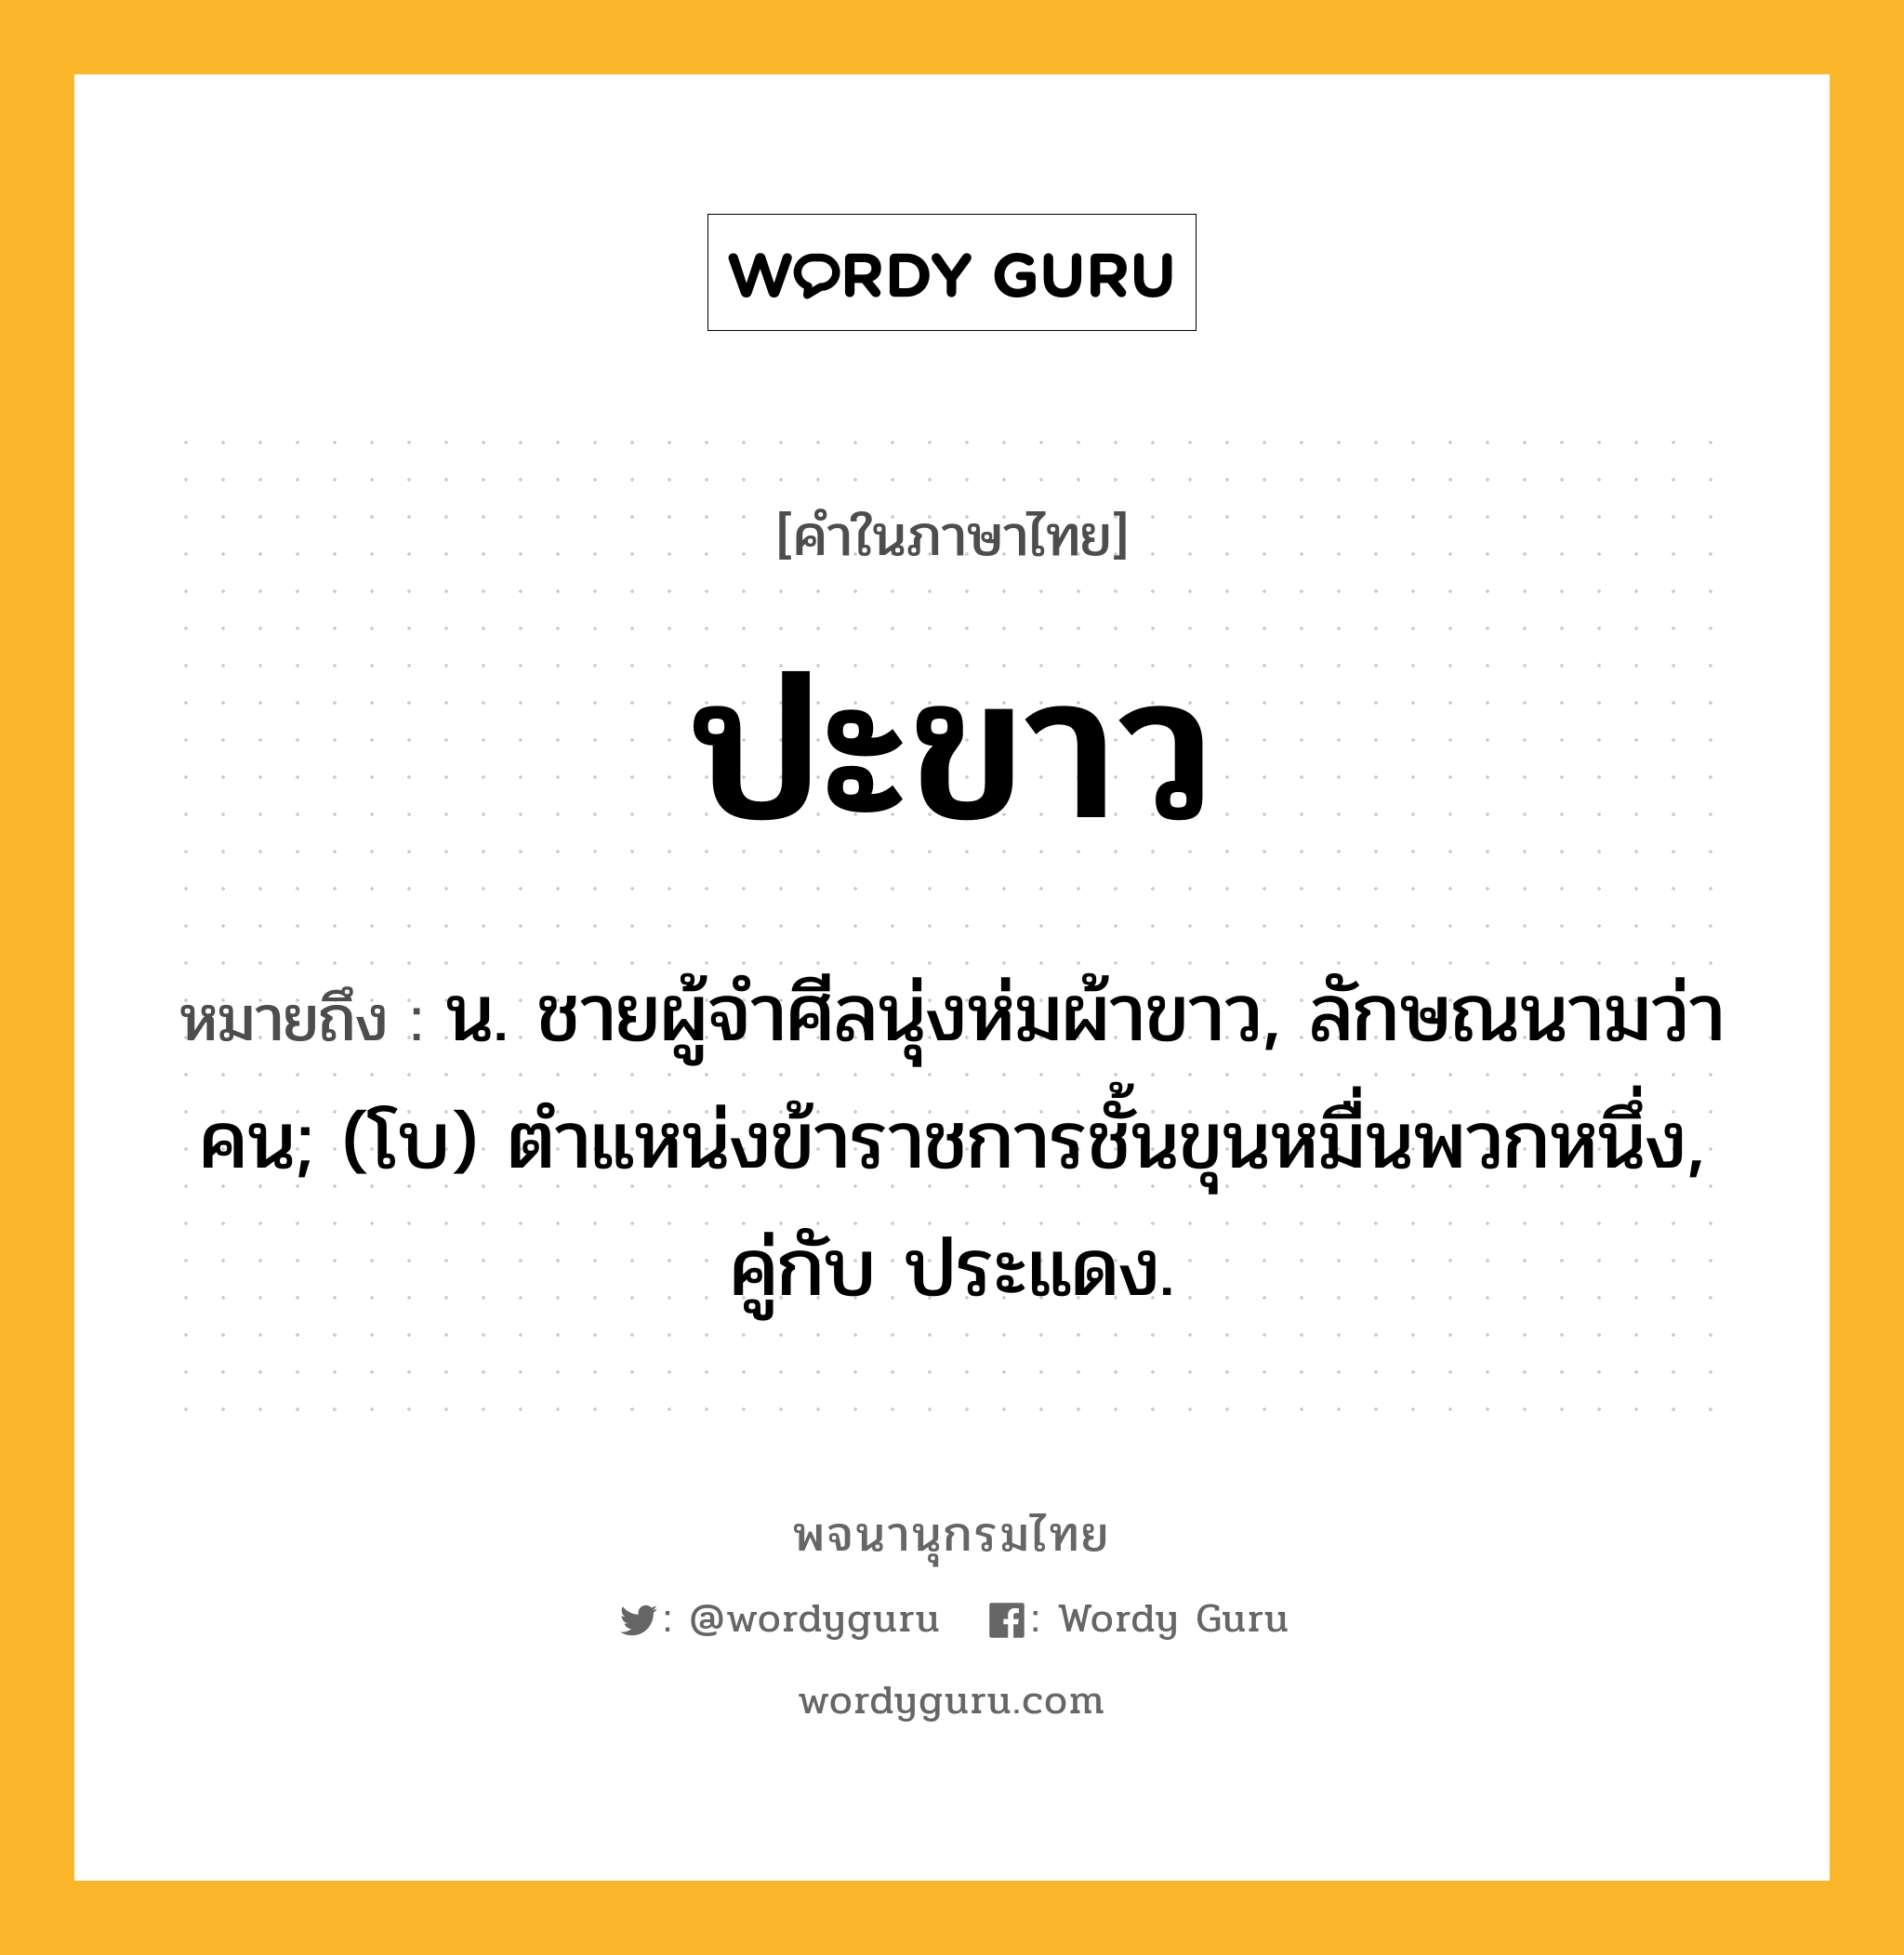 ปะขาว หมายถึงอะไร?, คำในภาษาไทย ปะขาว หมายถึง น. ชายผู้จําศีลนุ่งห่มผ้าขาว, ลักษณนามว่า คน; (โบ) ตําแหน่งข้าราชการชั้นขุนหมื่นพวกหนึ่ง, คู่กับ ประแดง.